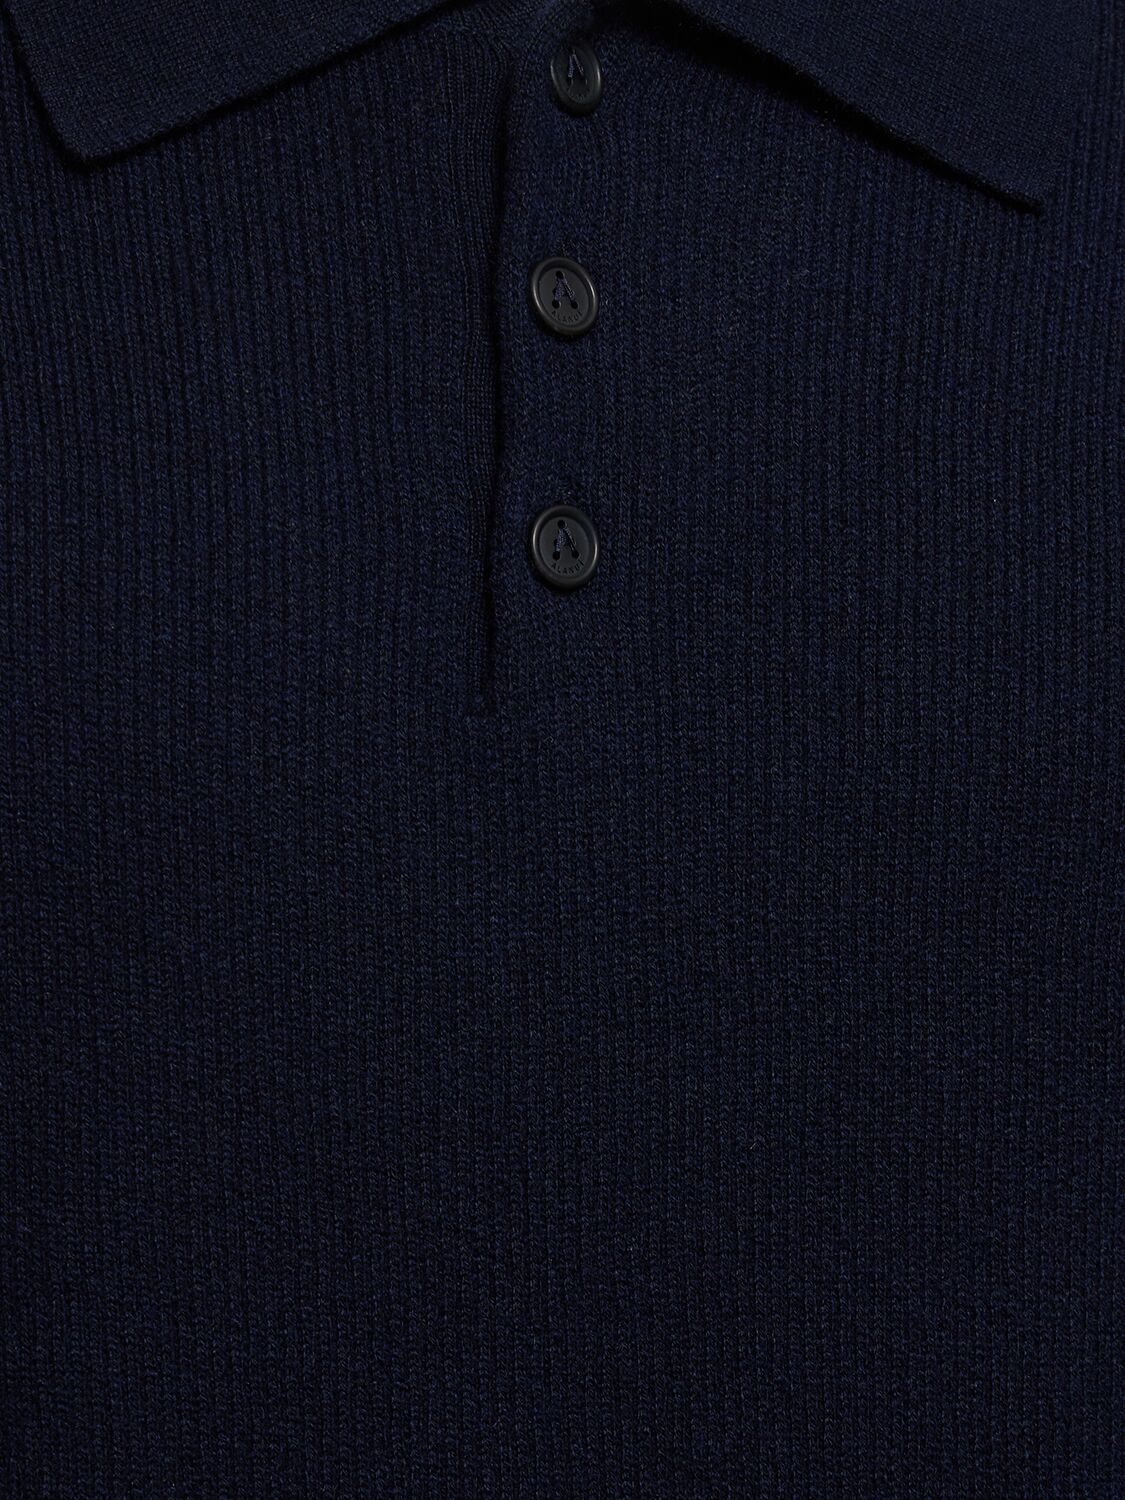 羊绒&棉针织长袖POLO衫